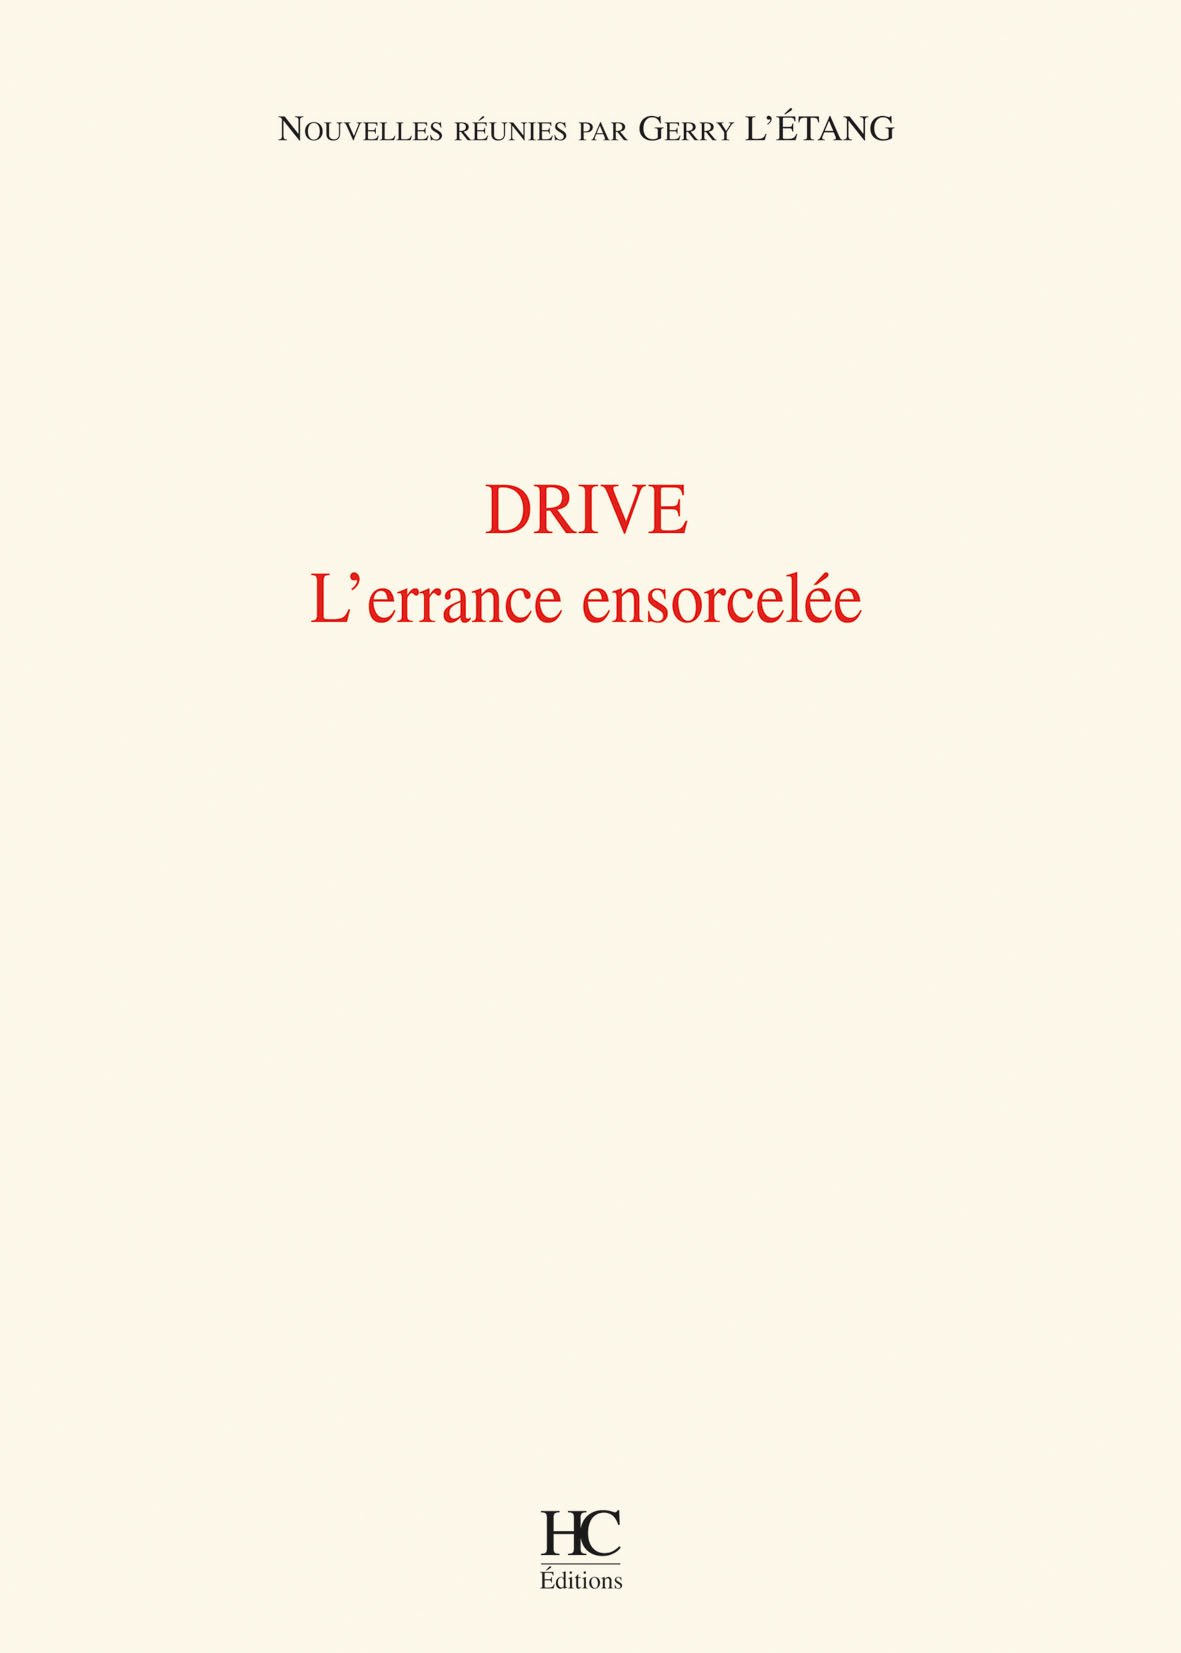 drive.jpg